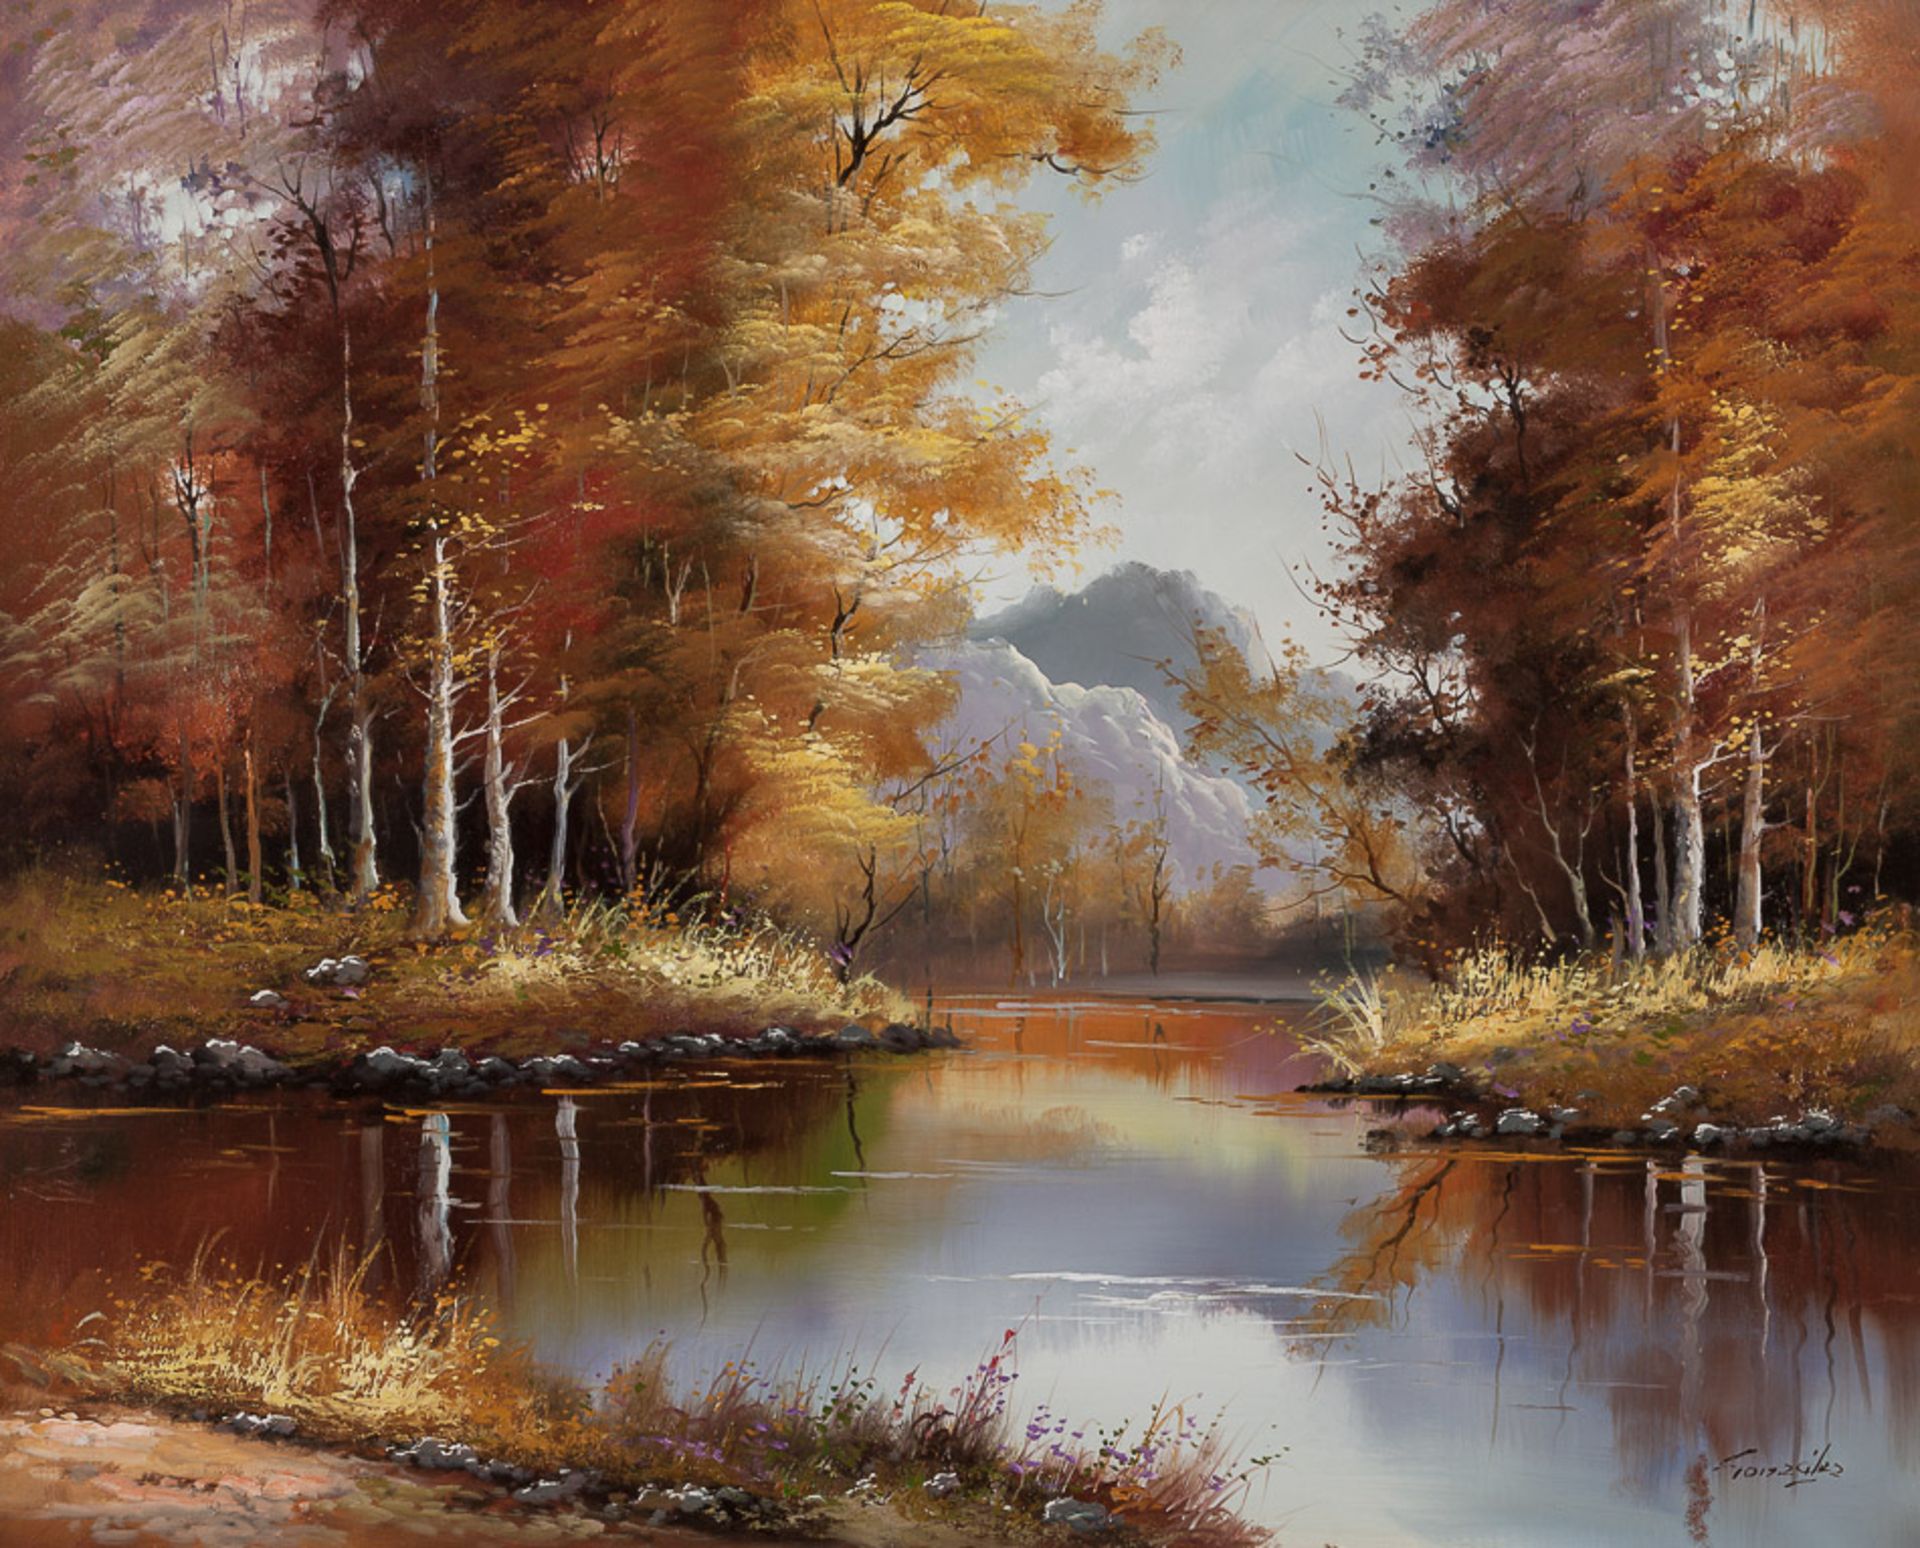 R.Gonzales 20. Jhd."Waldsee im Herbst"
Gemälde Öl/Leinwand, 64 cm x  90 cm, gerahmt,
rechts unten